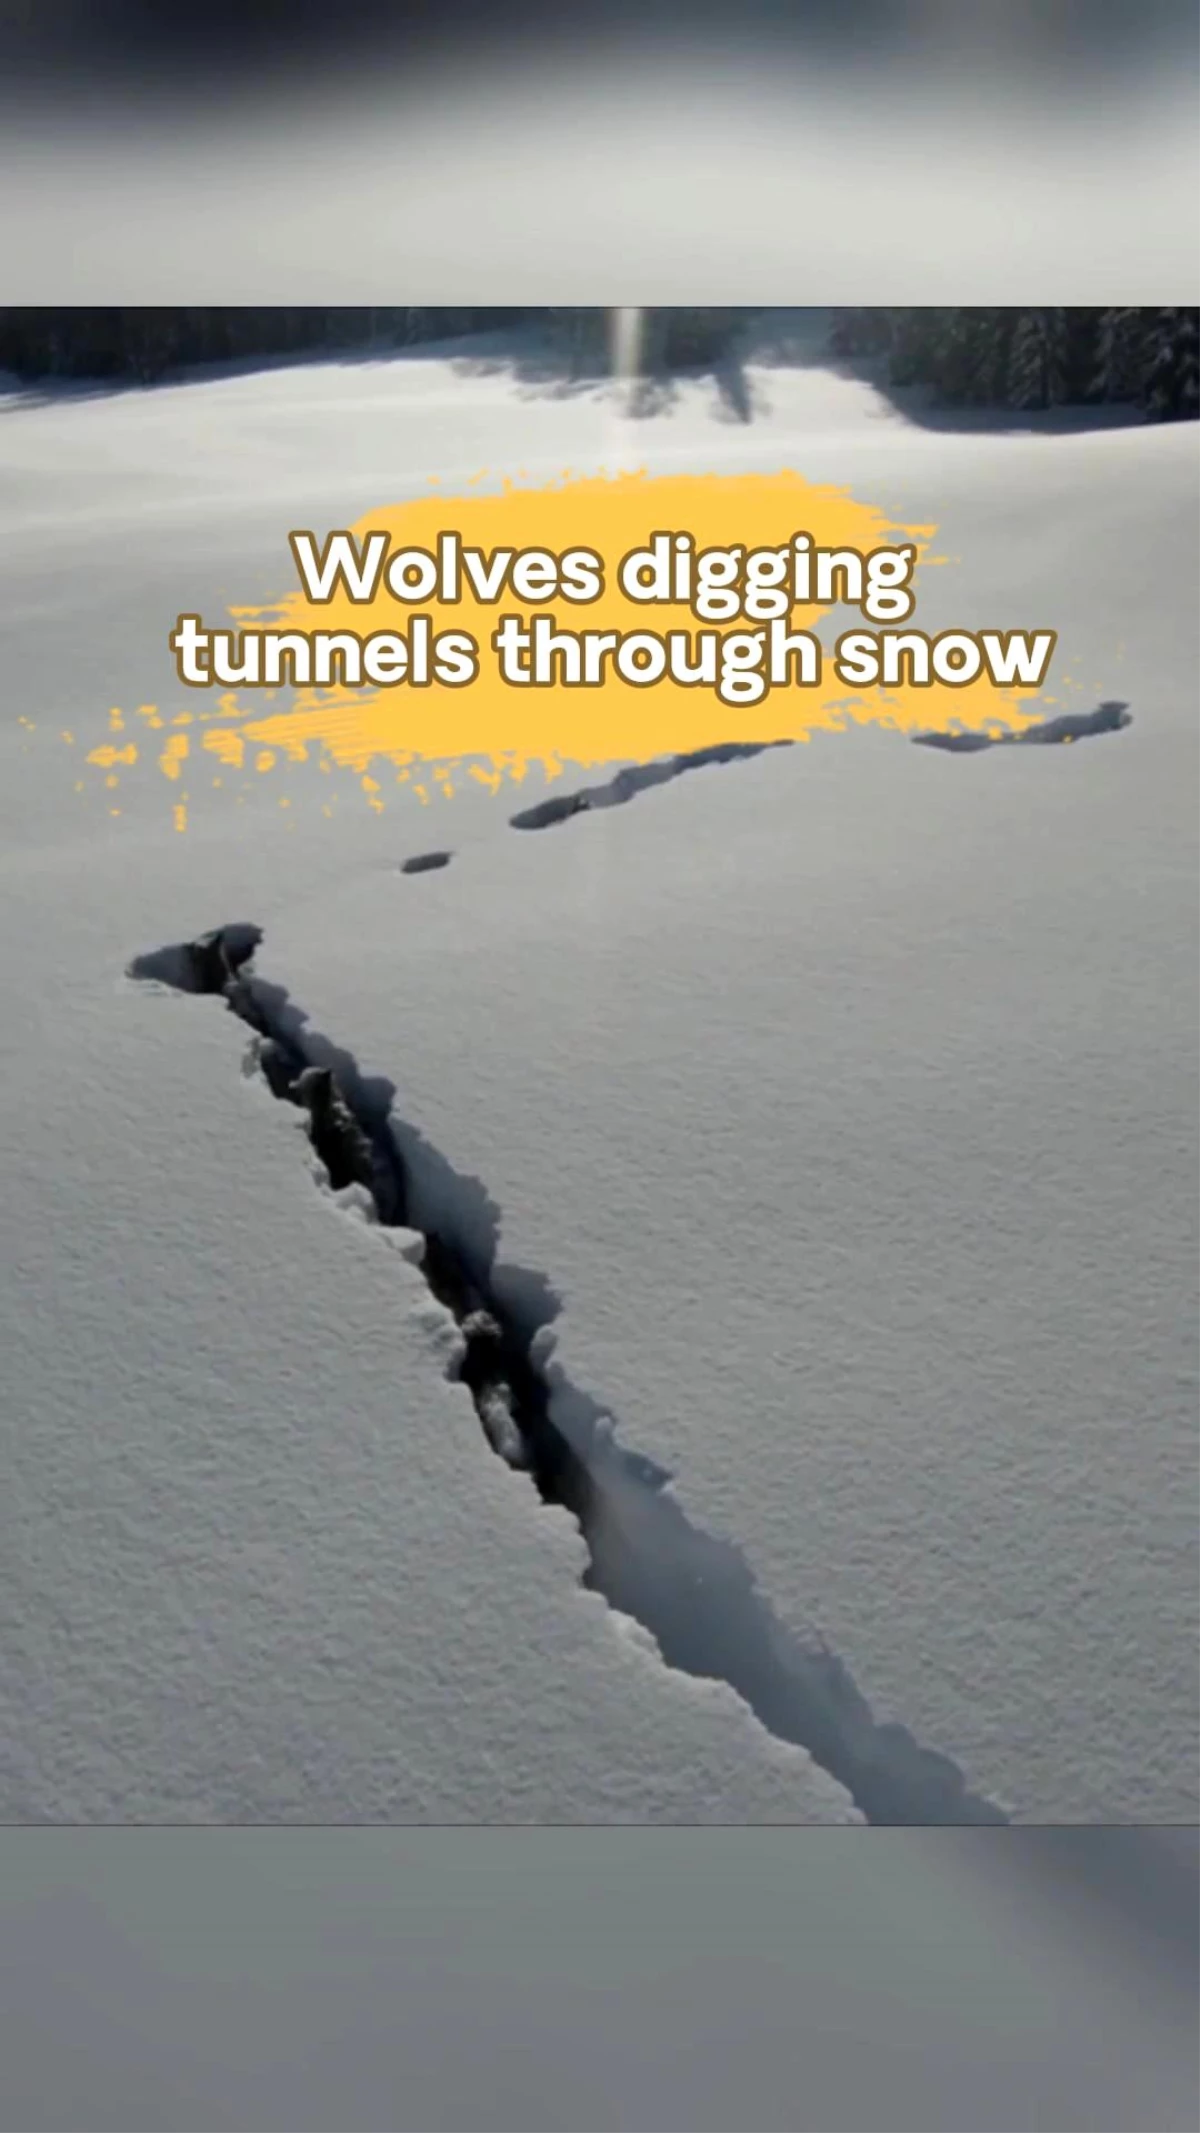 Karda tünel kazan kurtların çeşitli görüntüleri